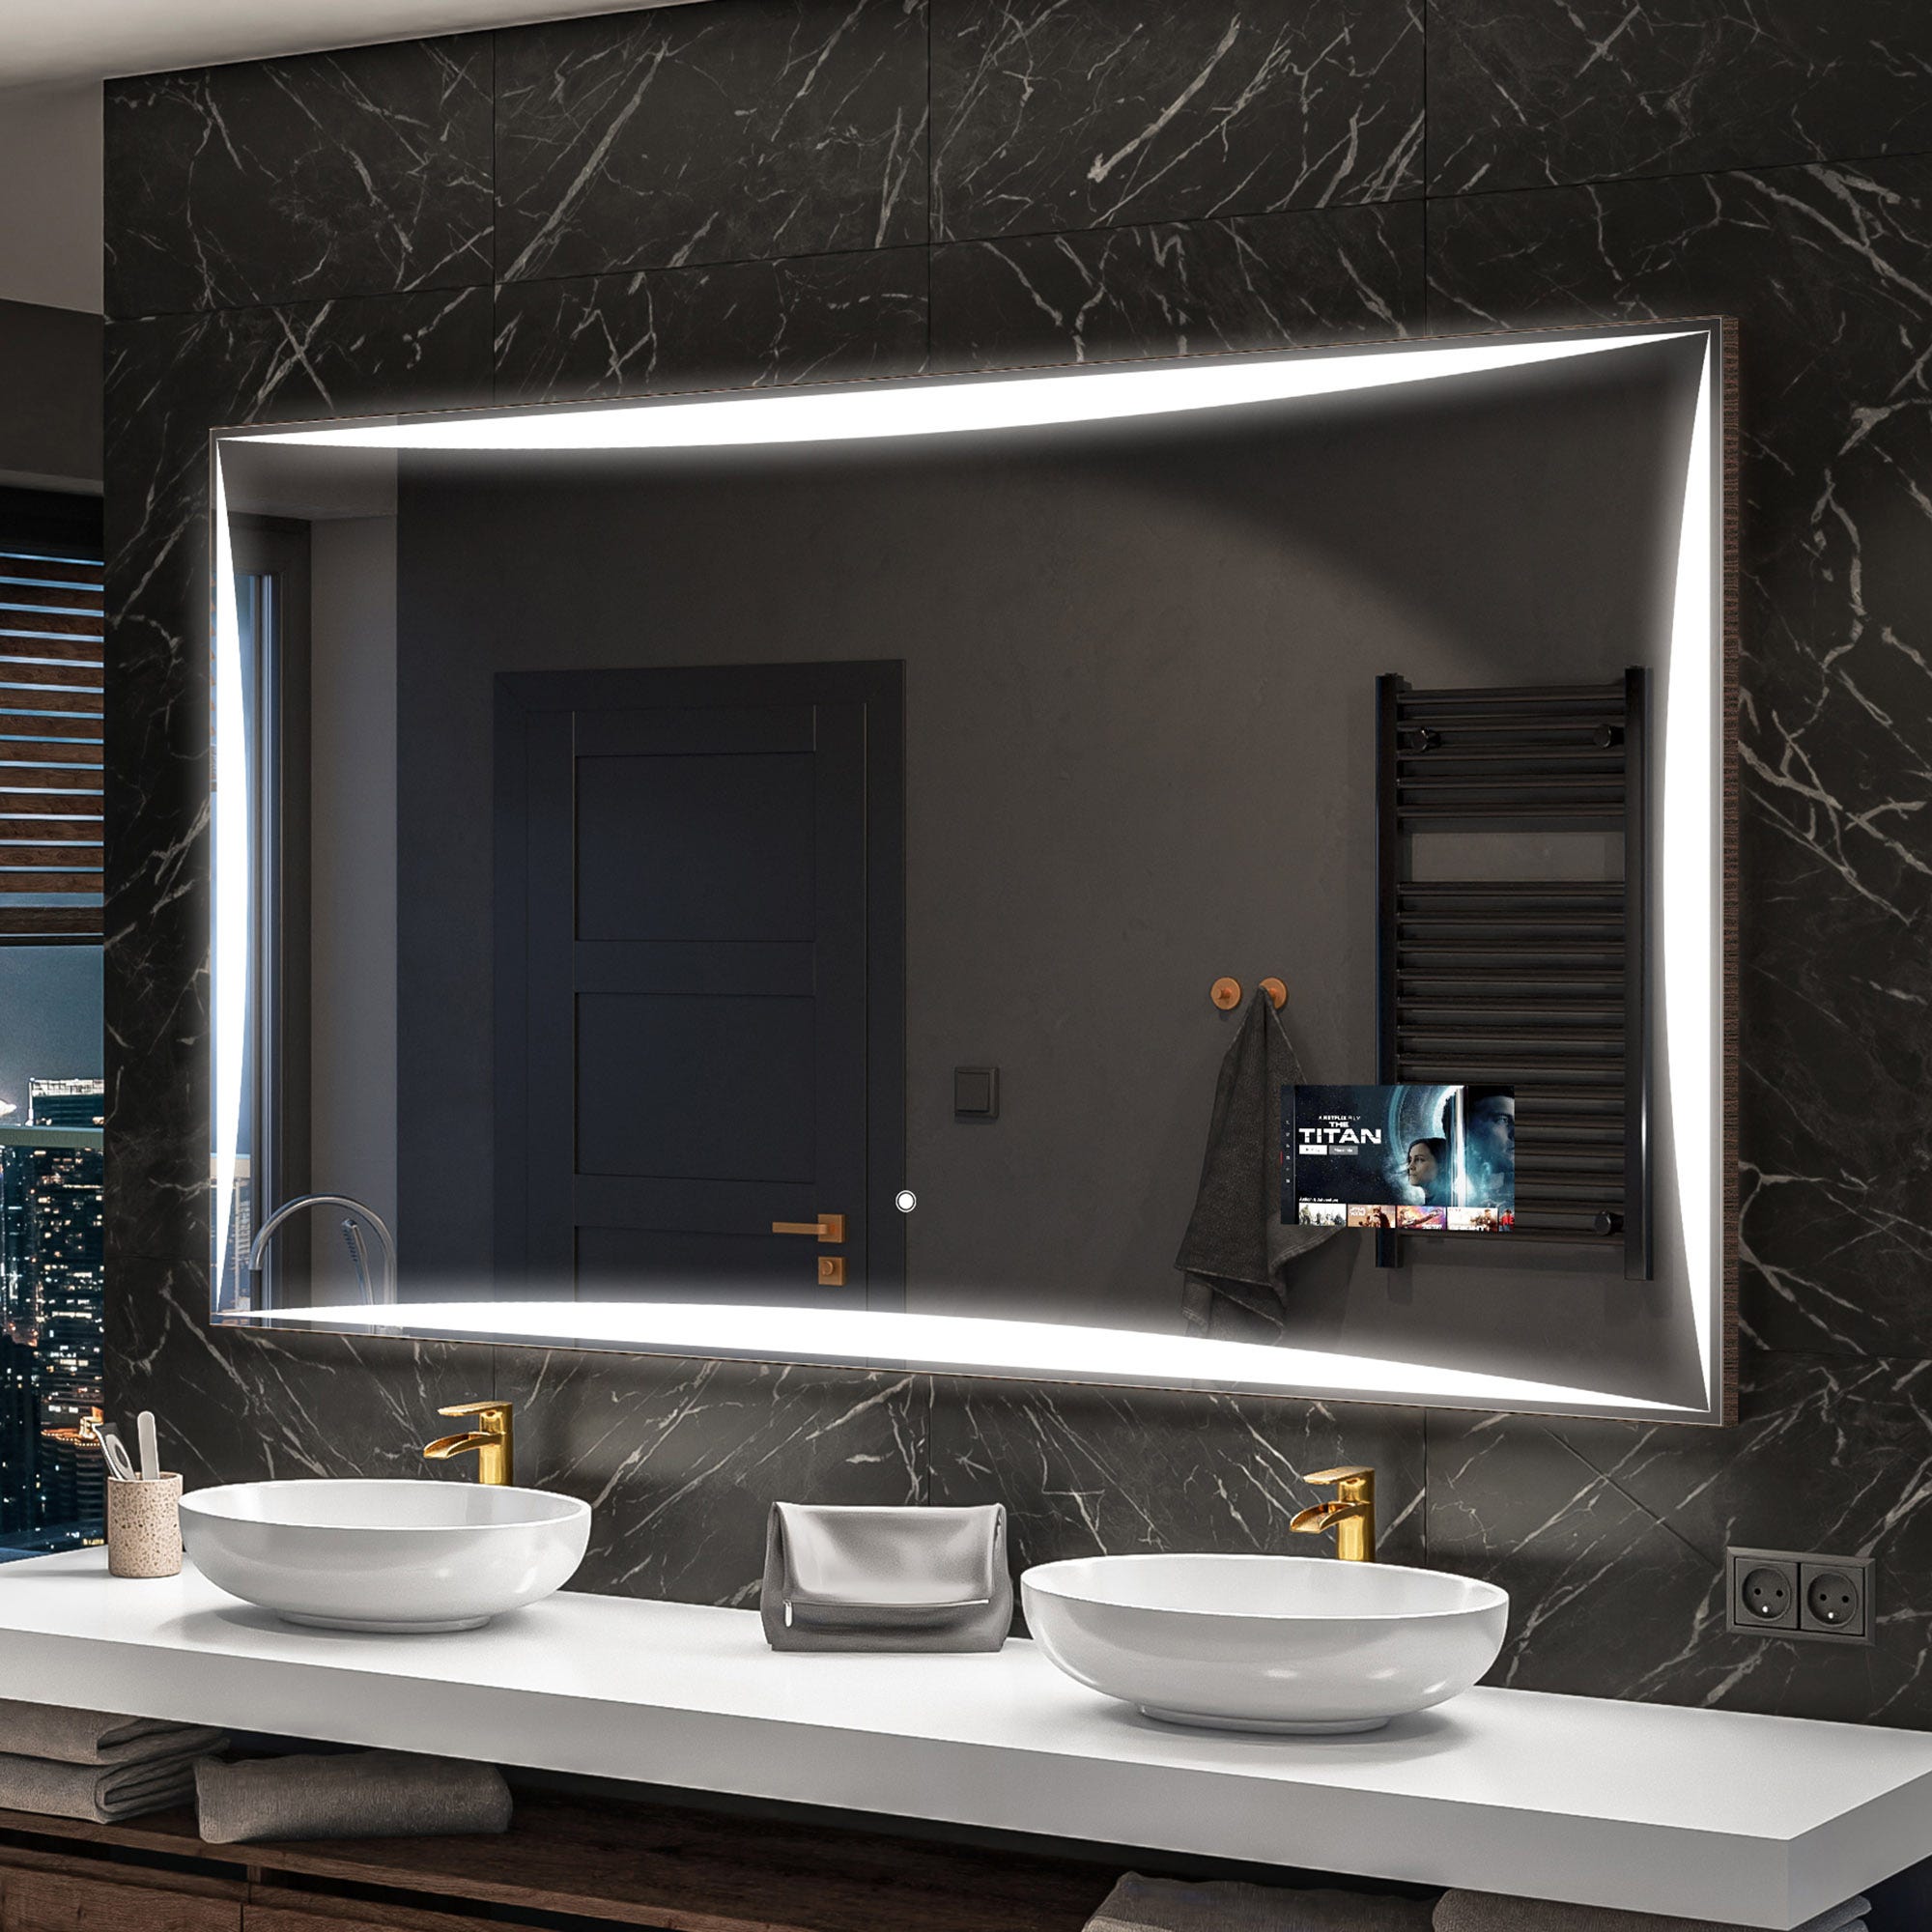 Miroir de salle de bain led tactile mural 3 en 1 éclairage blanc